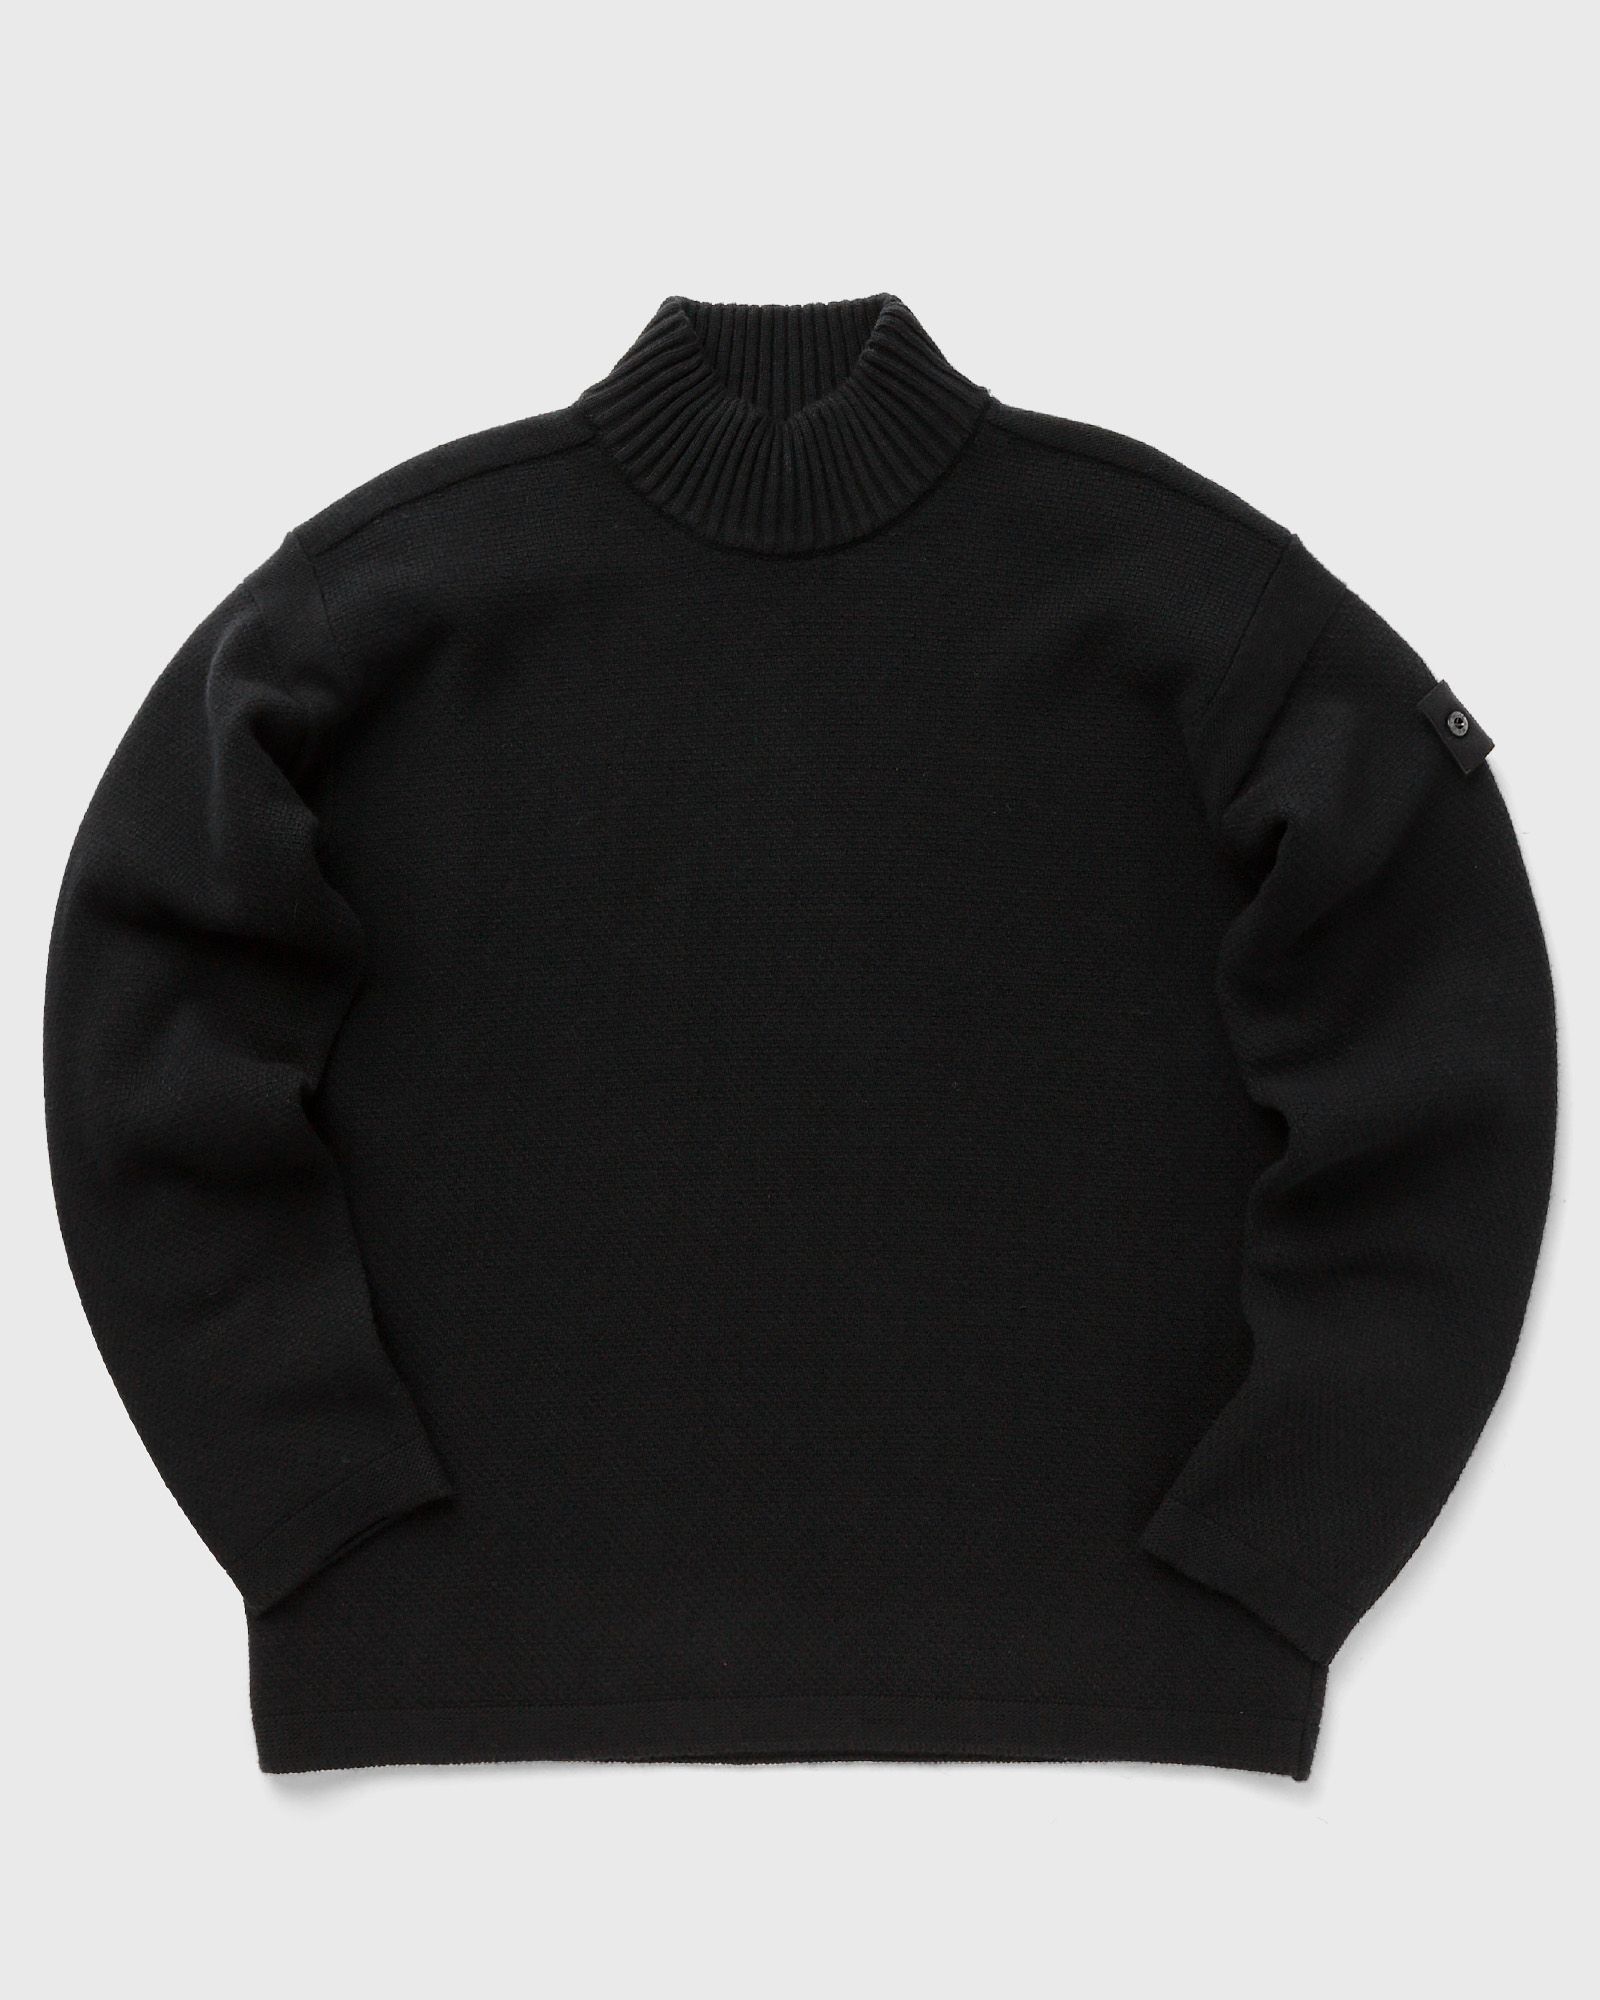 Stone Island - knitwear geelong wool_  ghost pieces men pullovers black in größe:s